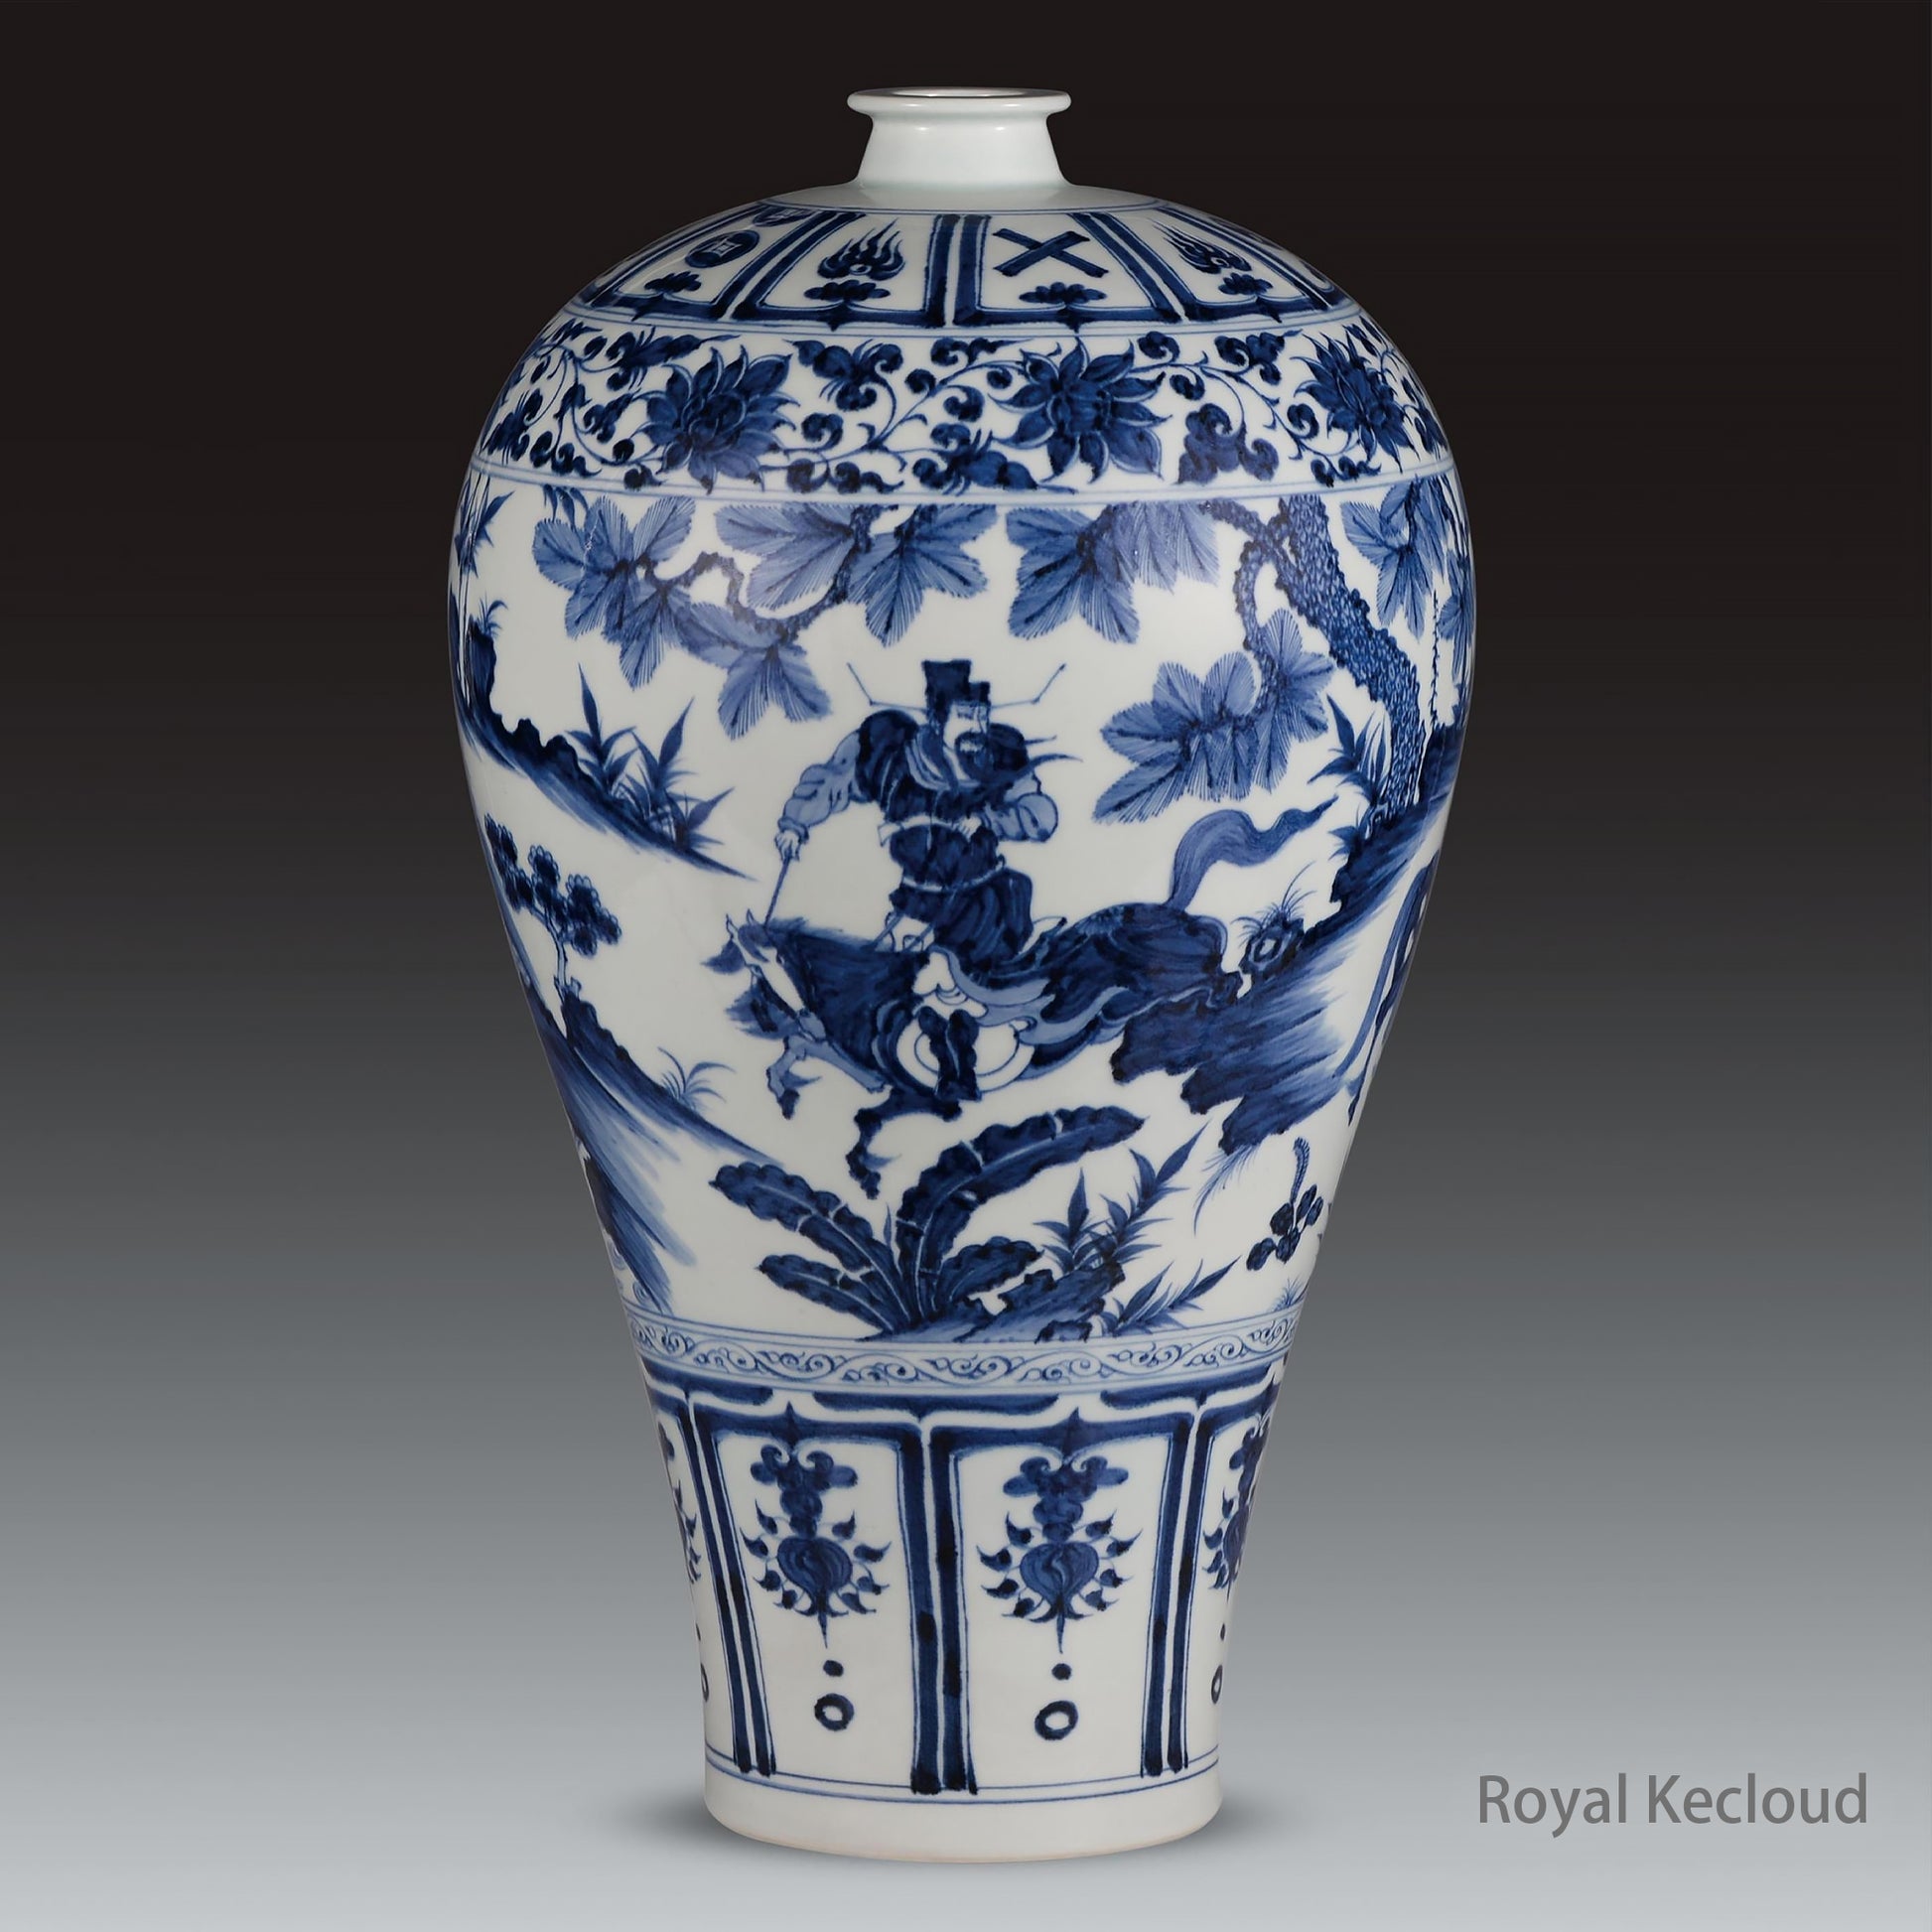 A Rare Yuan Blue and White Prunus Vase, 'Xiao He Yue Chasing Han Xin', Yuan Dynasty